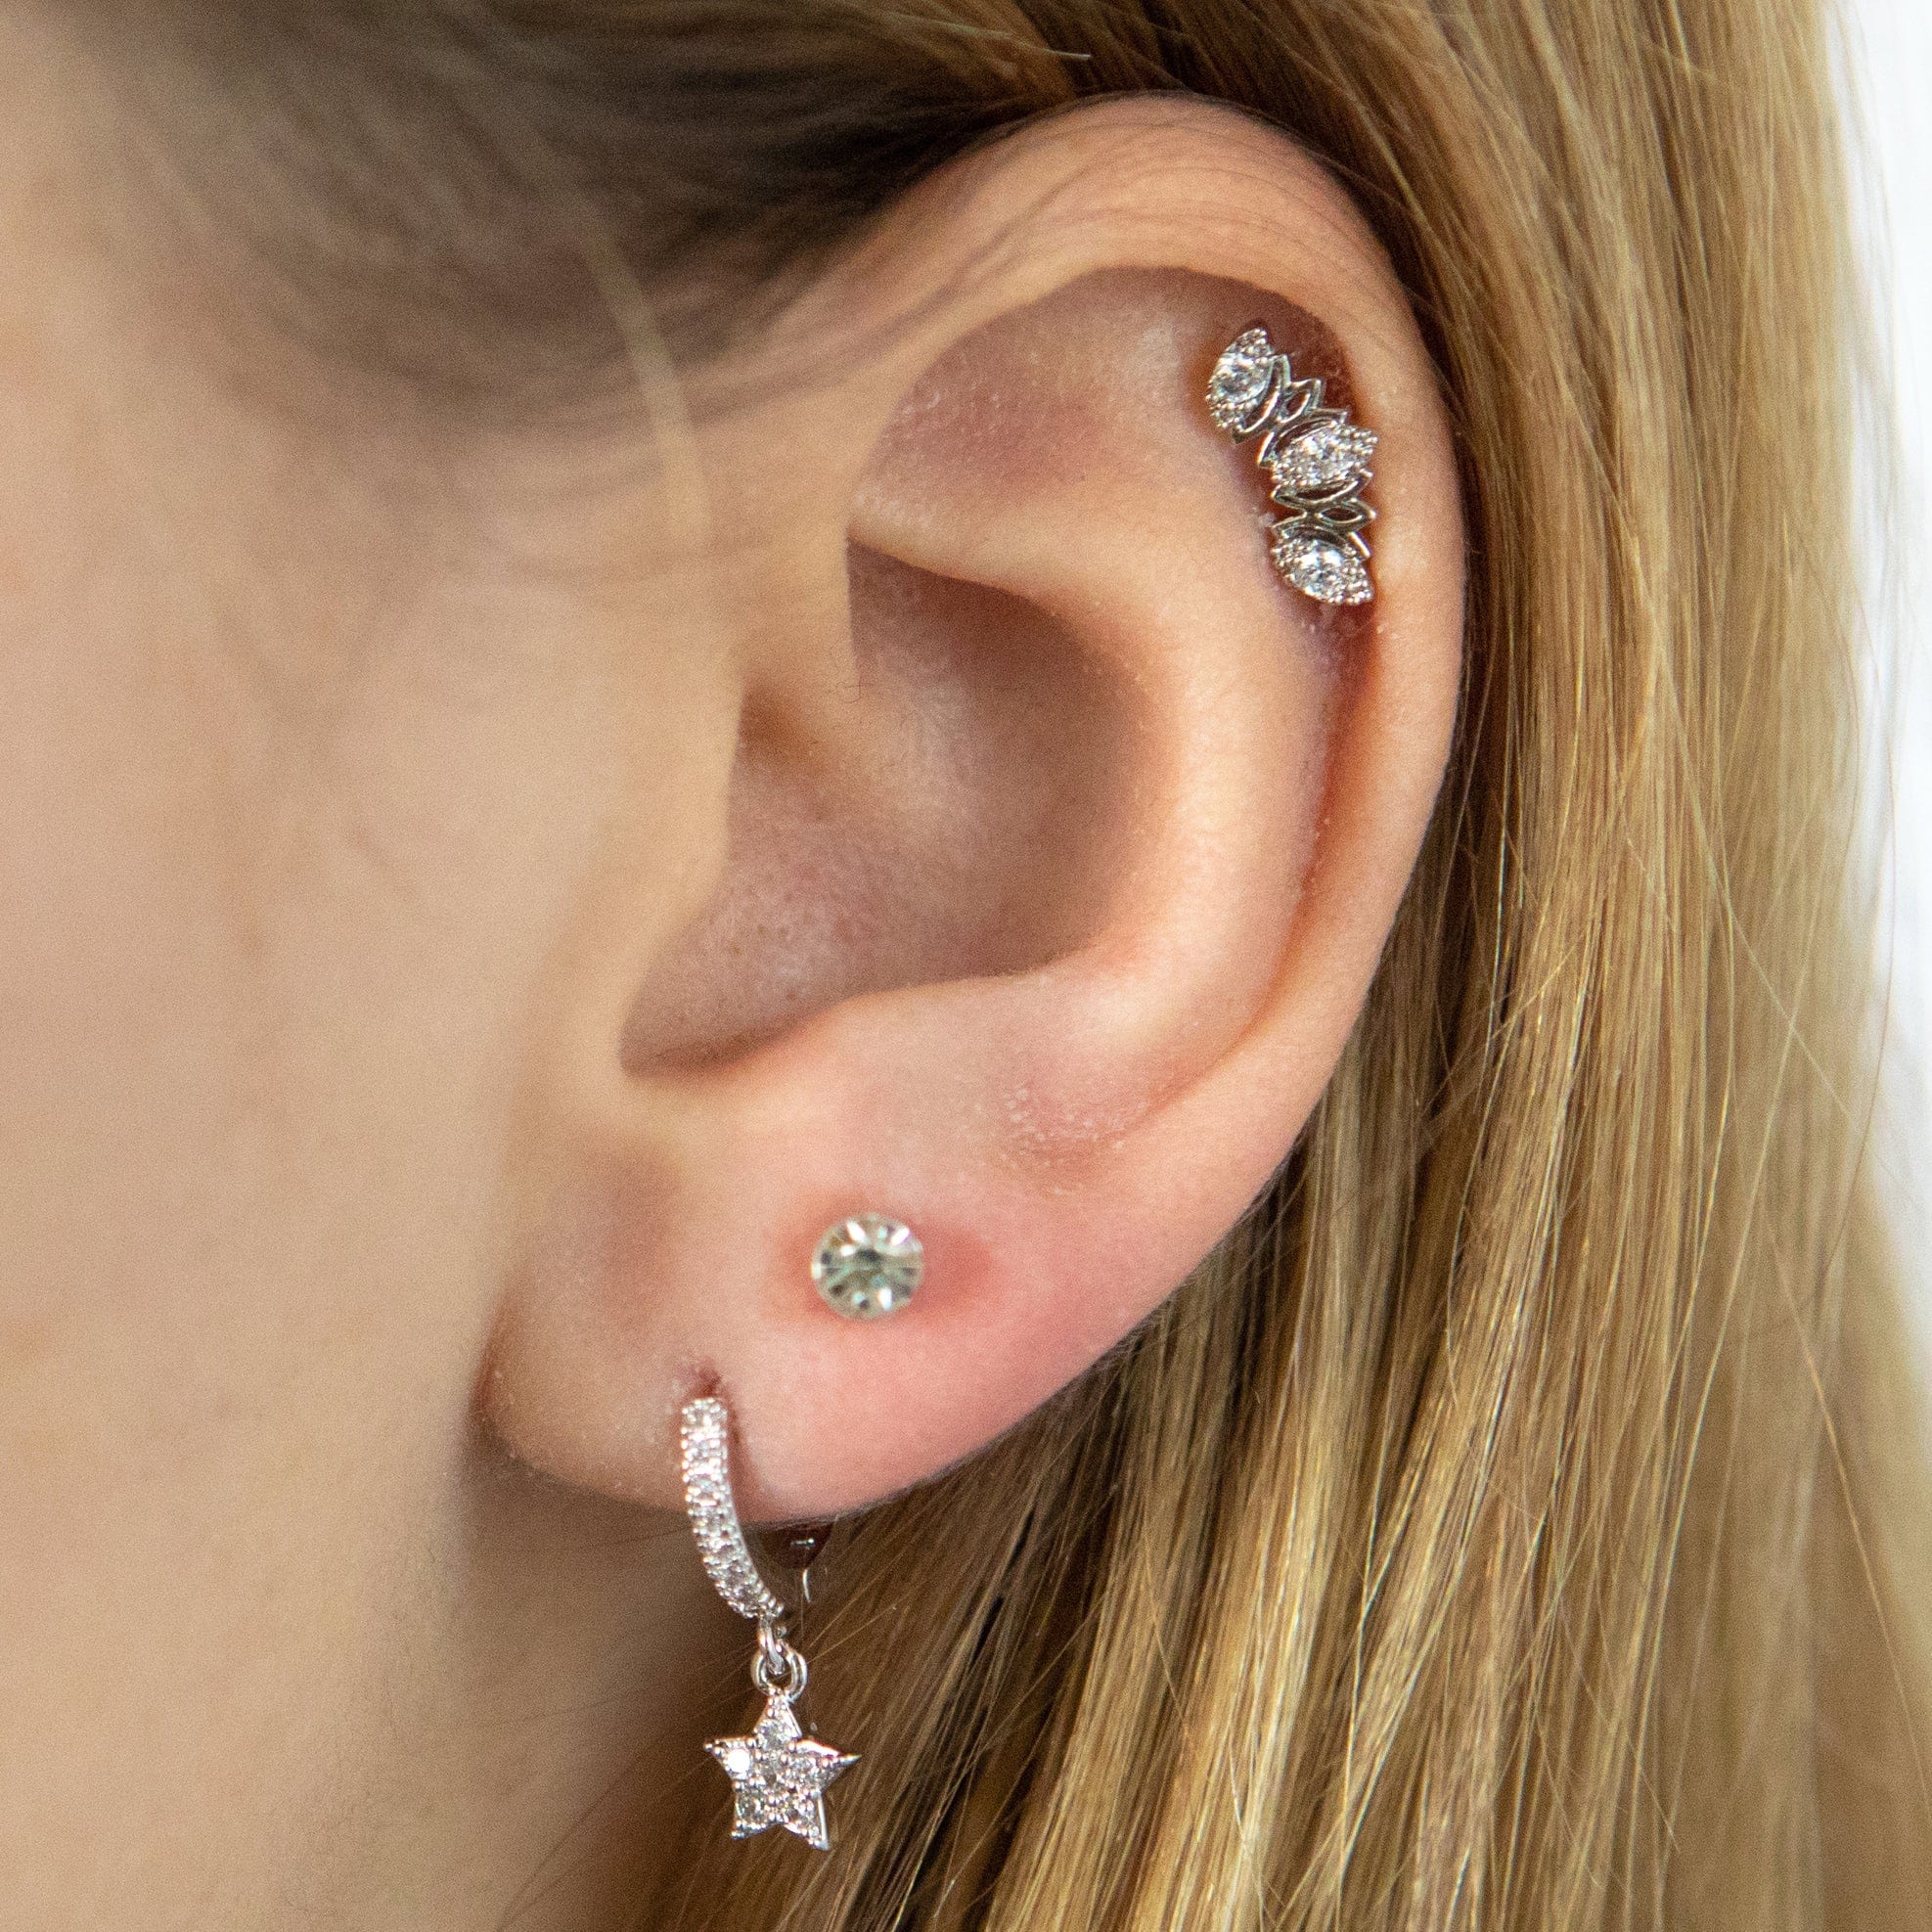 Twilight London Helix Earring Princess Crown Piercing